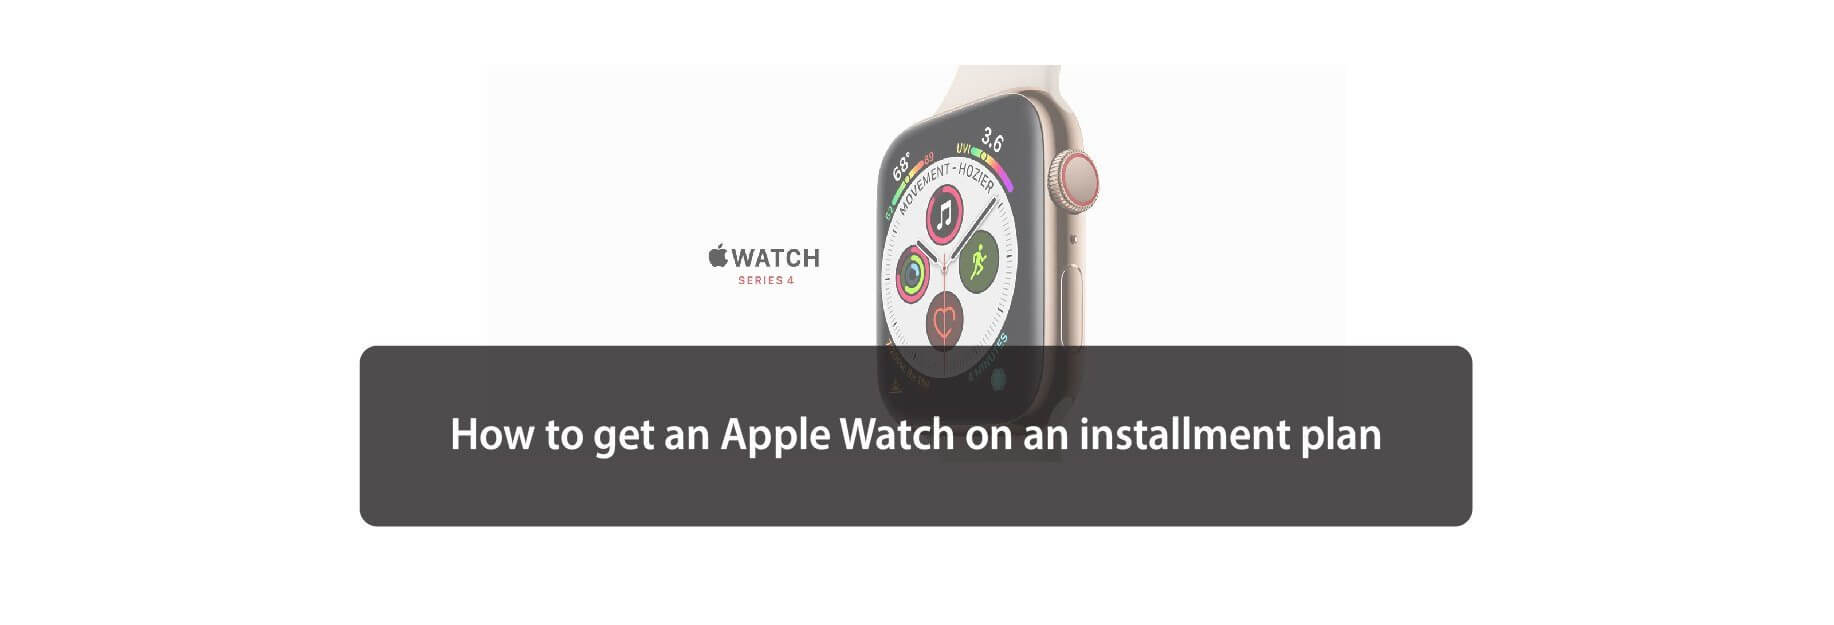 How to get an Apple Watch on an installment plan